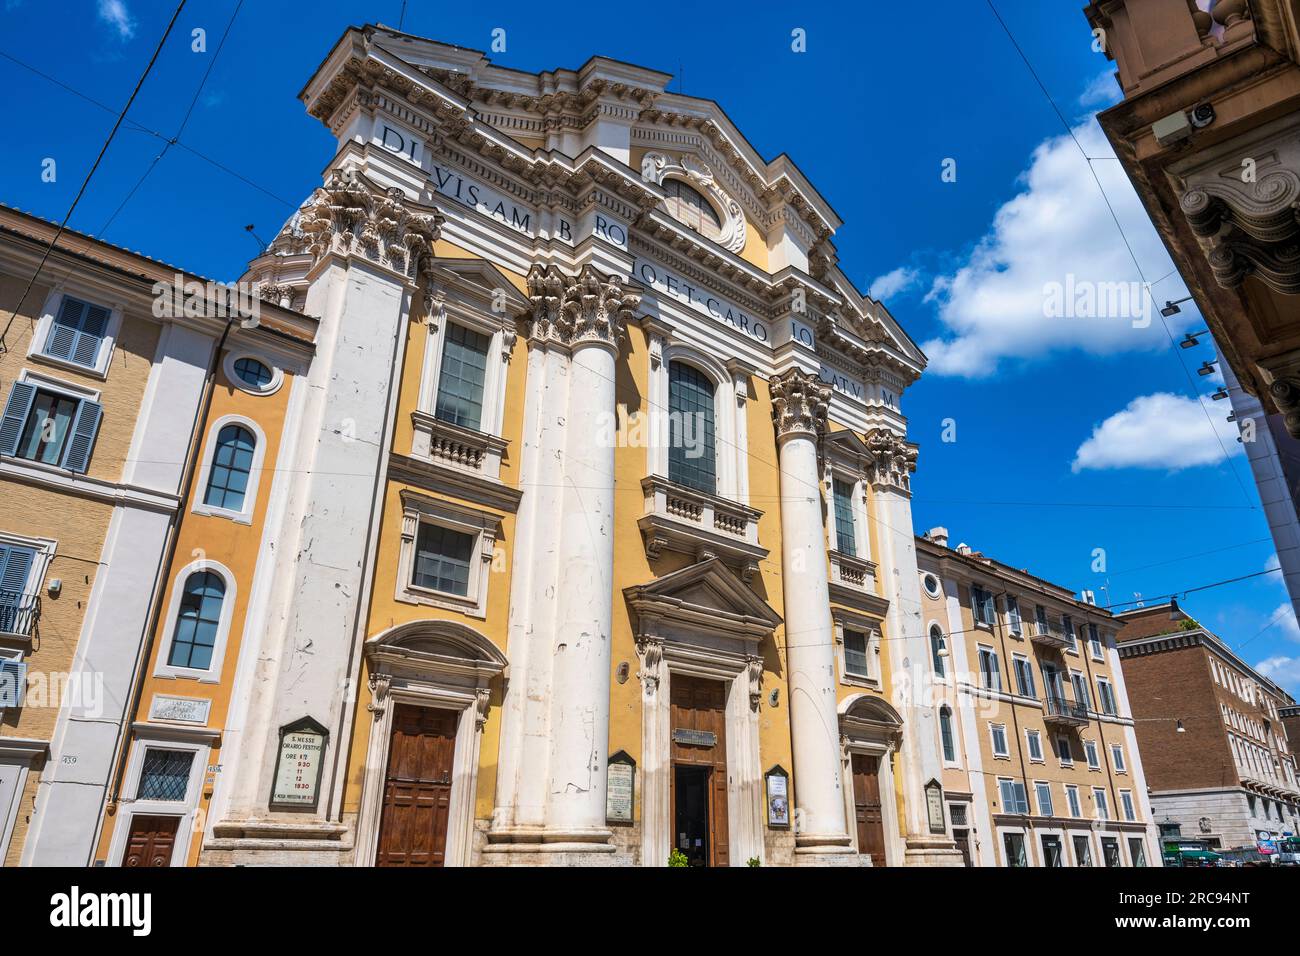 Façade of Basilica dei Santi Ambrogio e Carlo al Corso on Via del Corso in Rome, Lazio Region, Italy Stock Photo